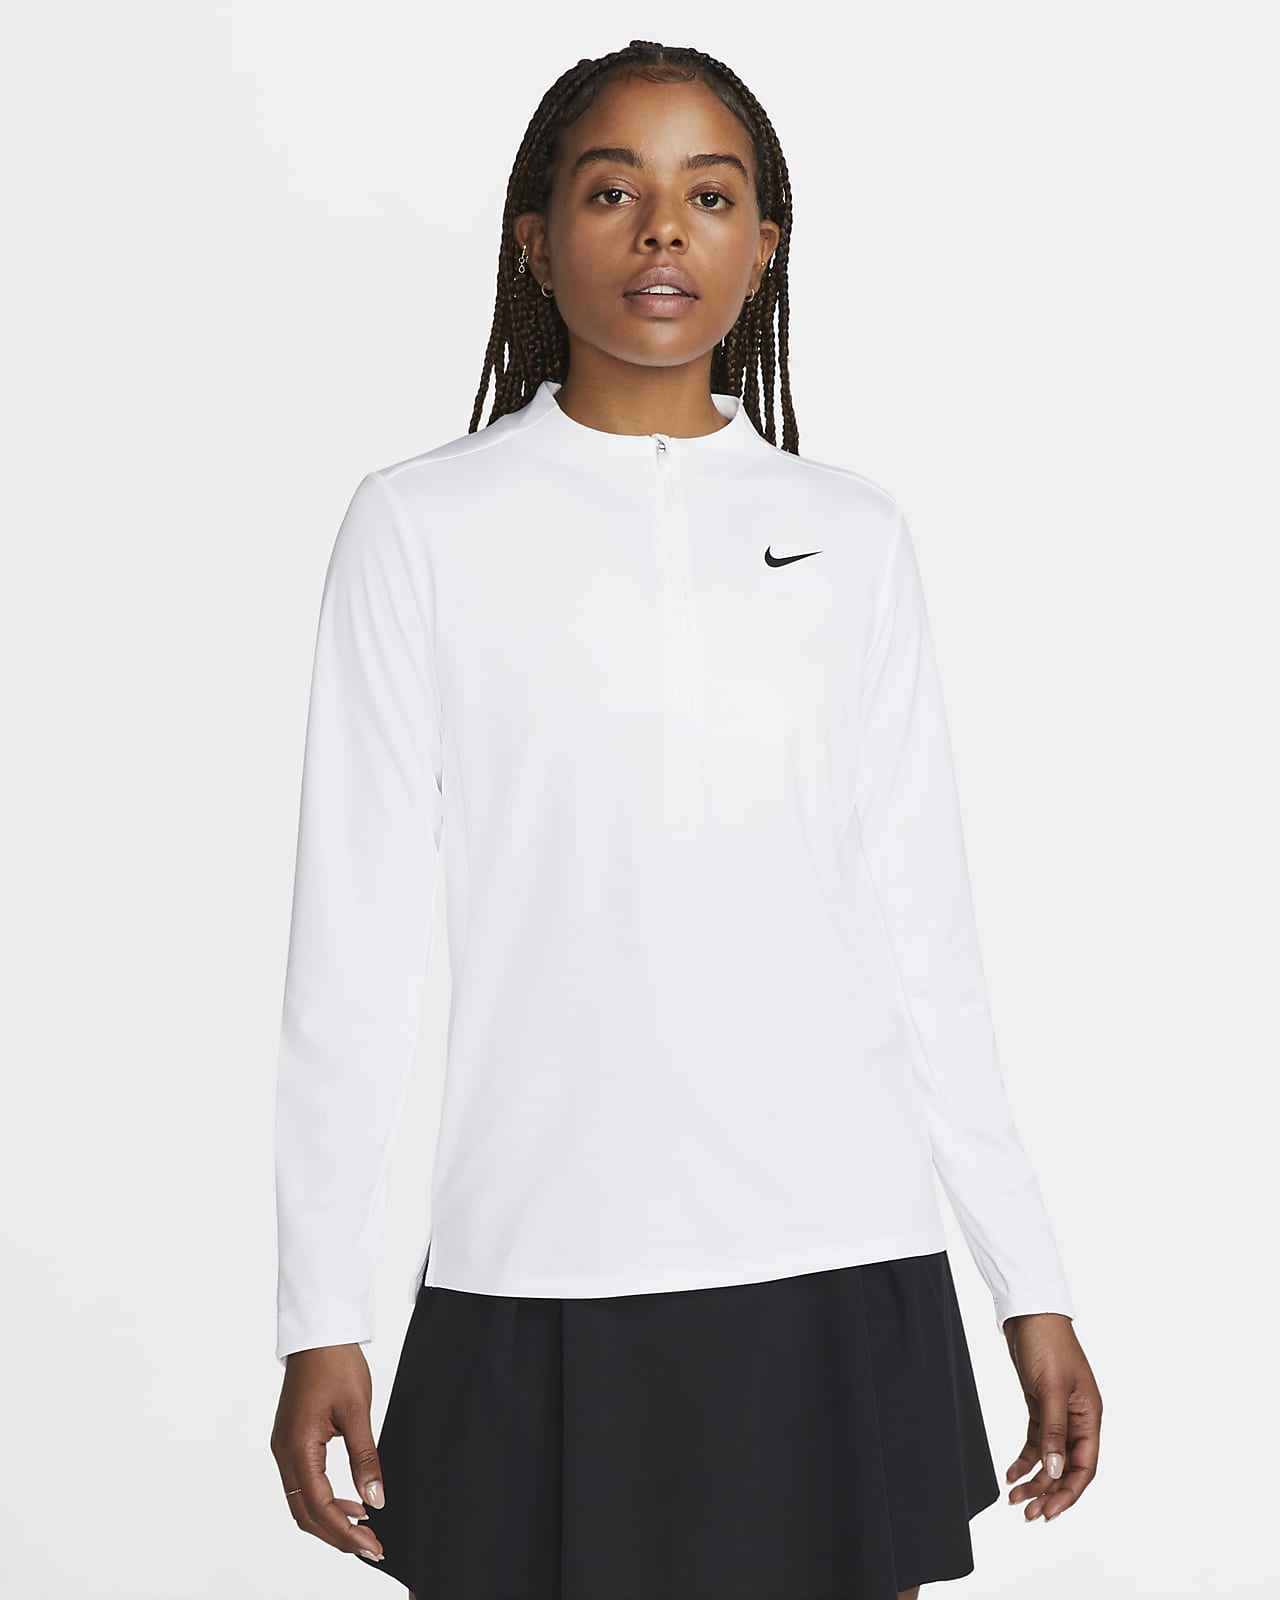 Tröja Nike Dri-FIT UV Advantage med halv dragkedja för kvinnor